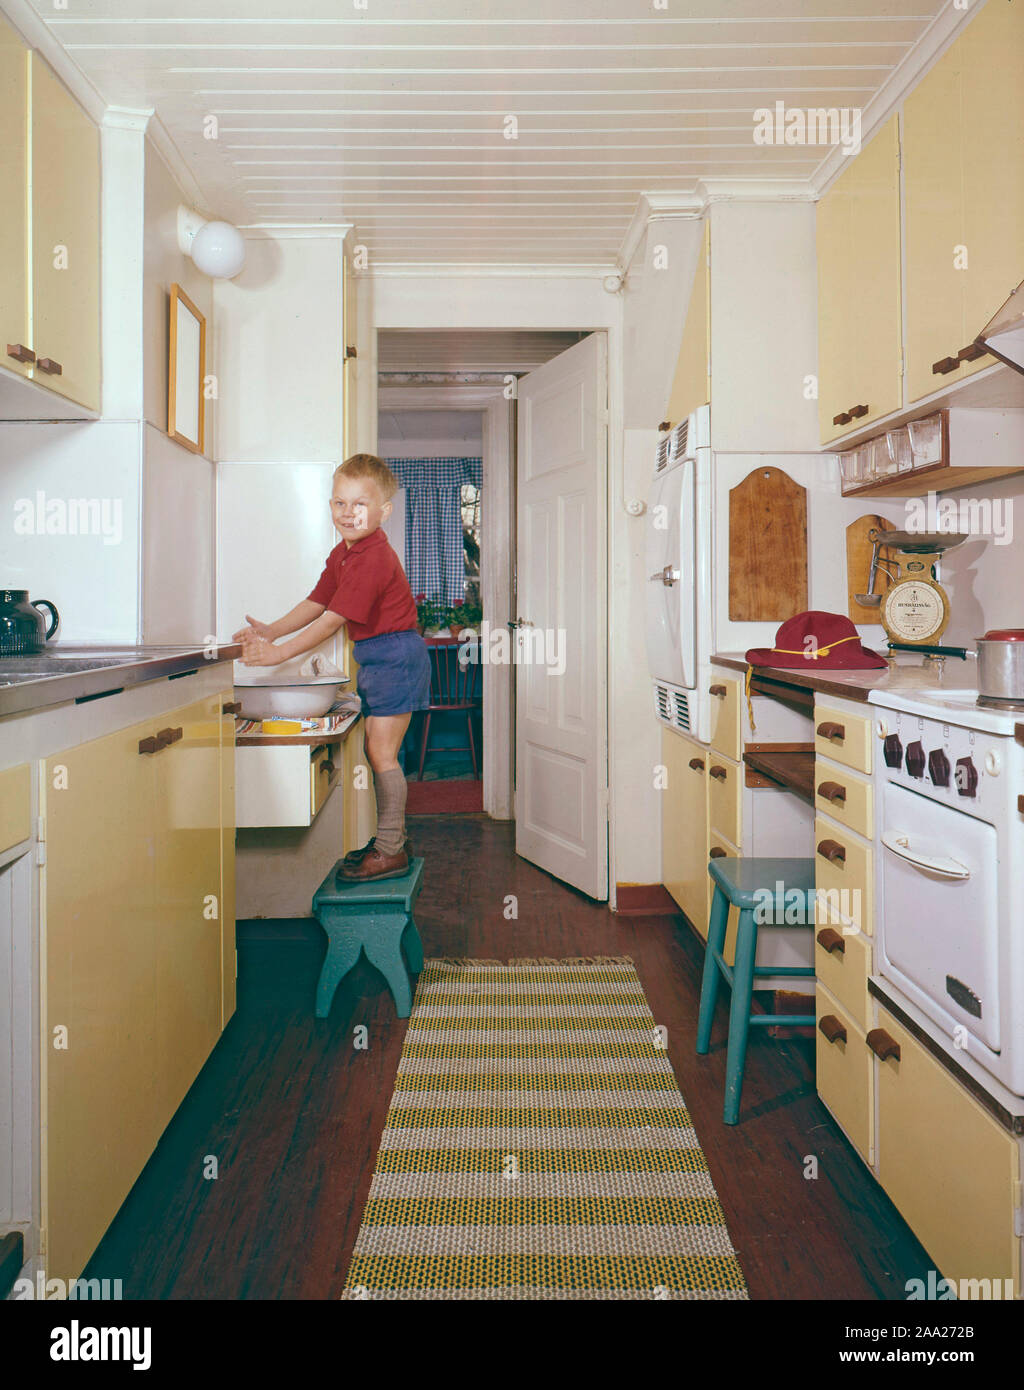 La cocina de 50S-60s. Un muchacho me s de pie sobre un taburete y se lava las manos. La cocina es típica de interior con tonos amarillos y objetos visibles del tiempo. Suecia 1950 1960 Foto de stock